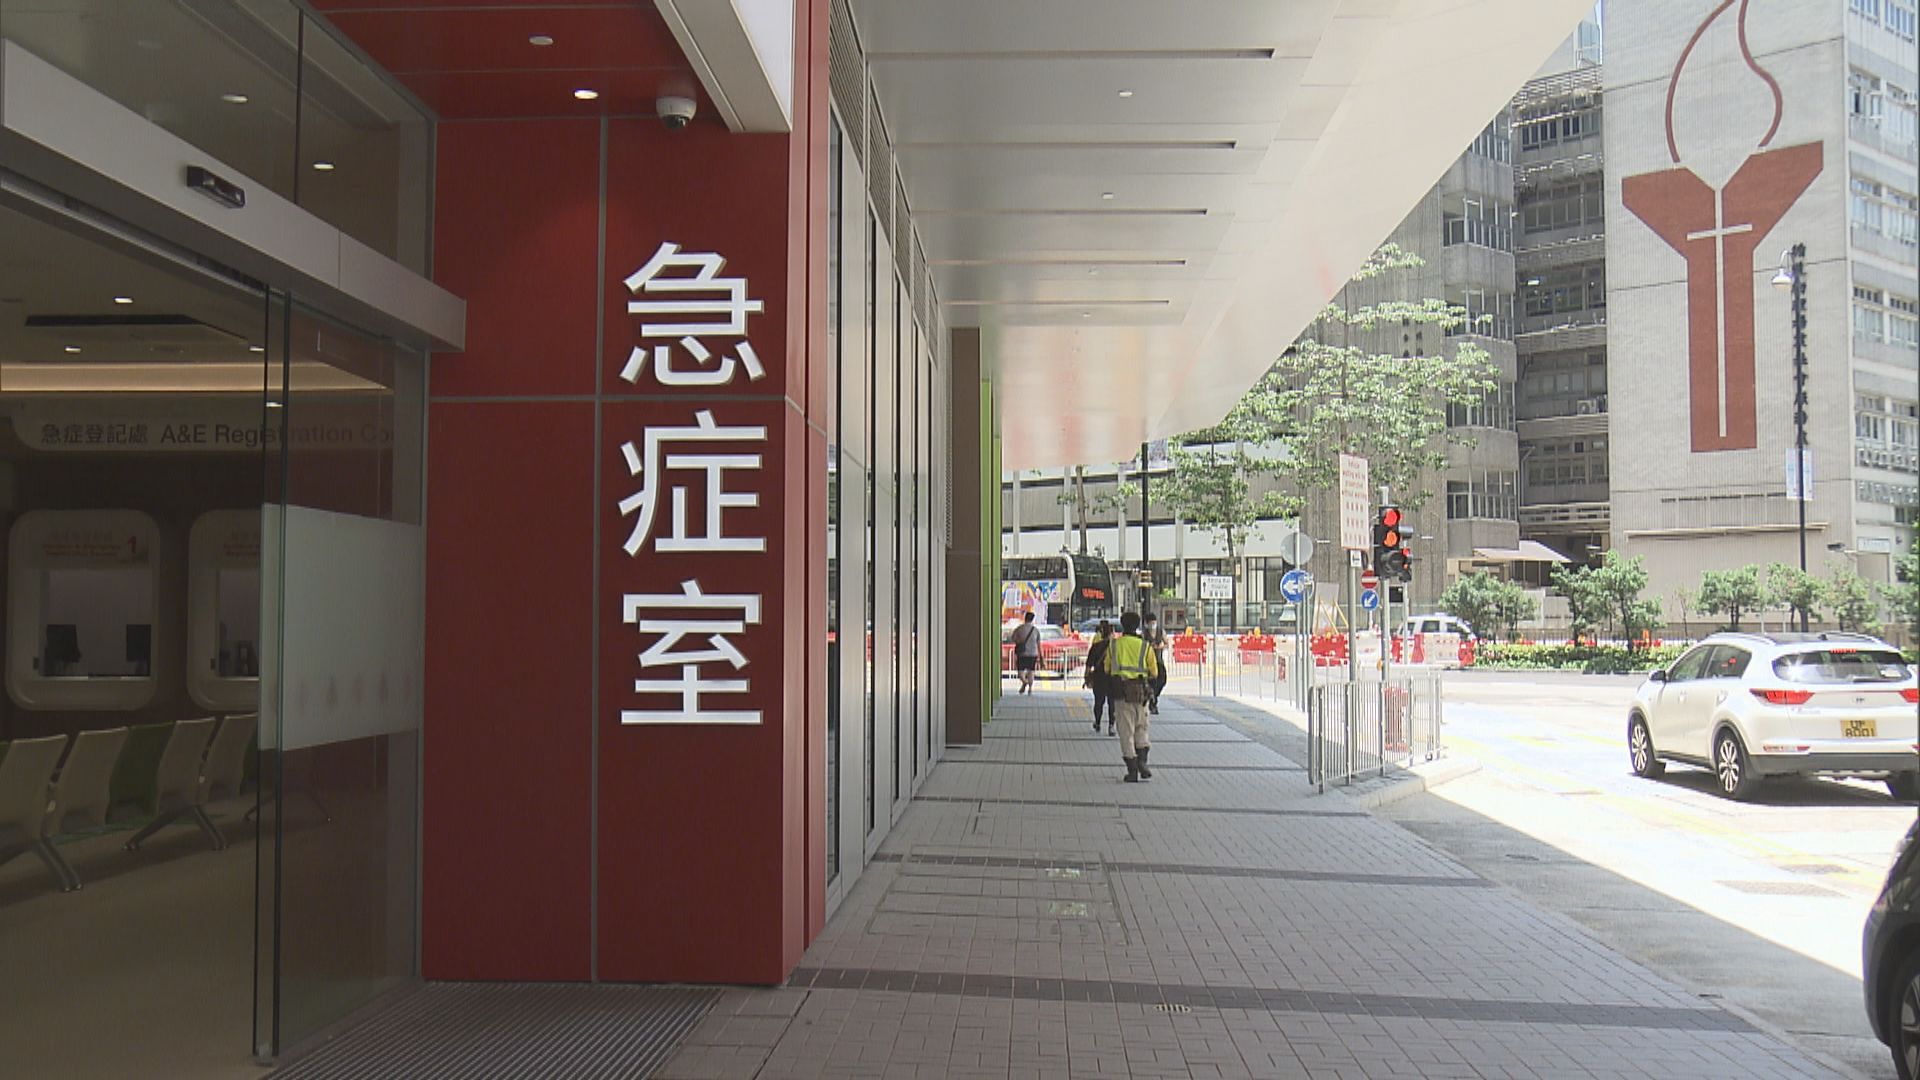 廣華醫院新急症室周三啟用 入口搬到碧街